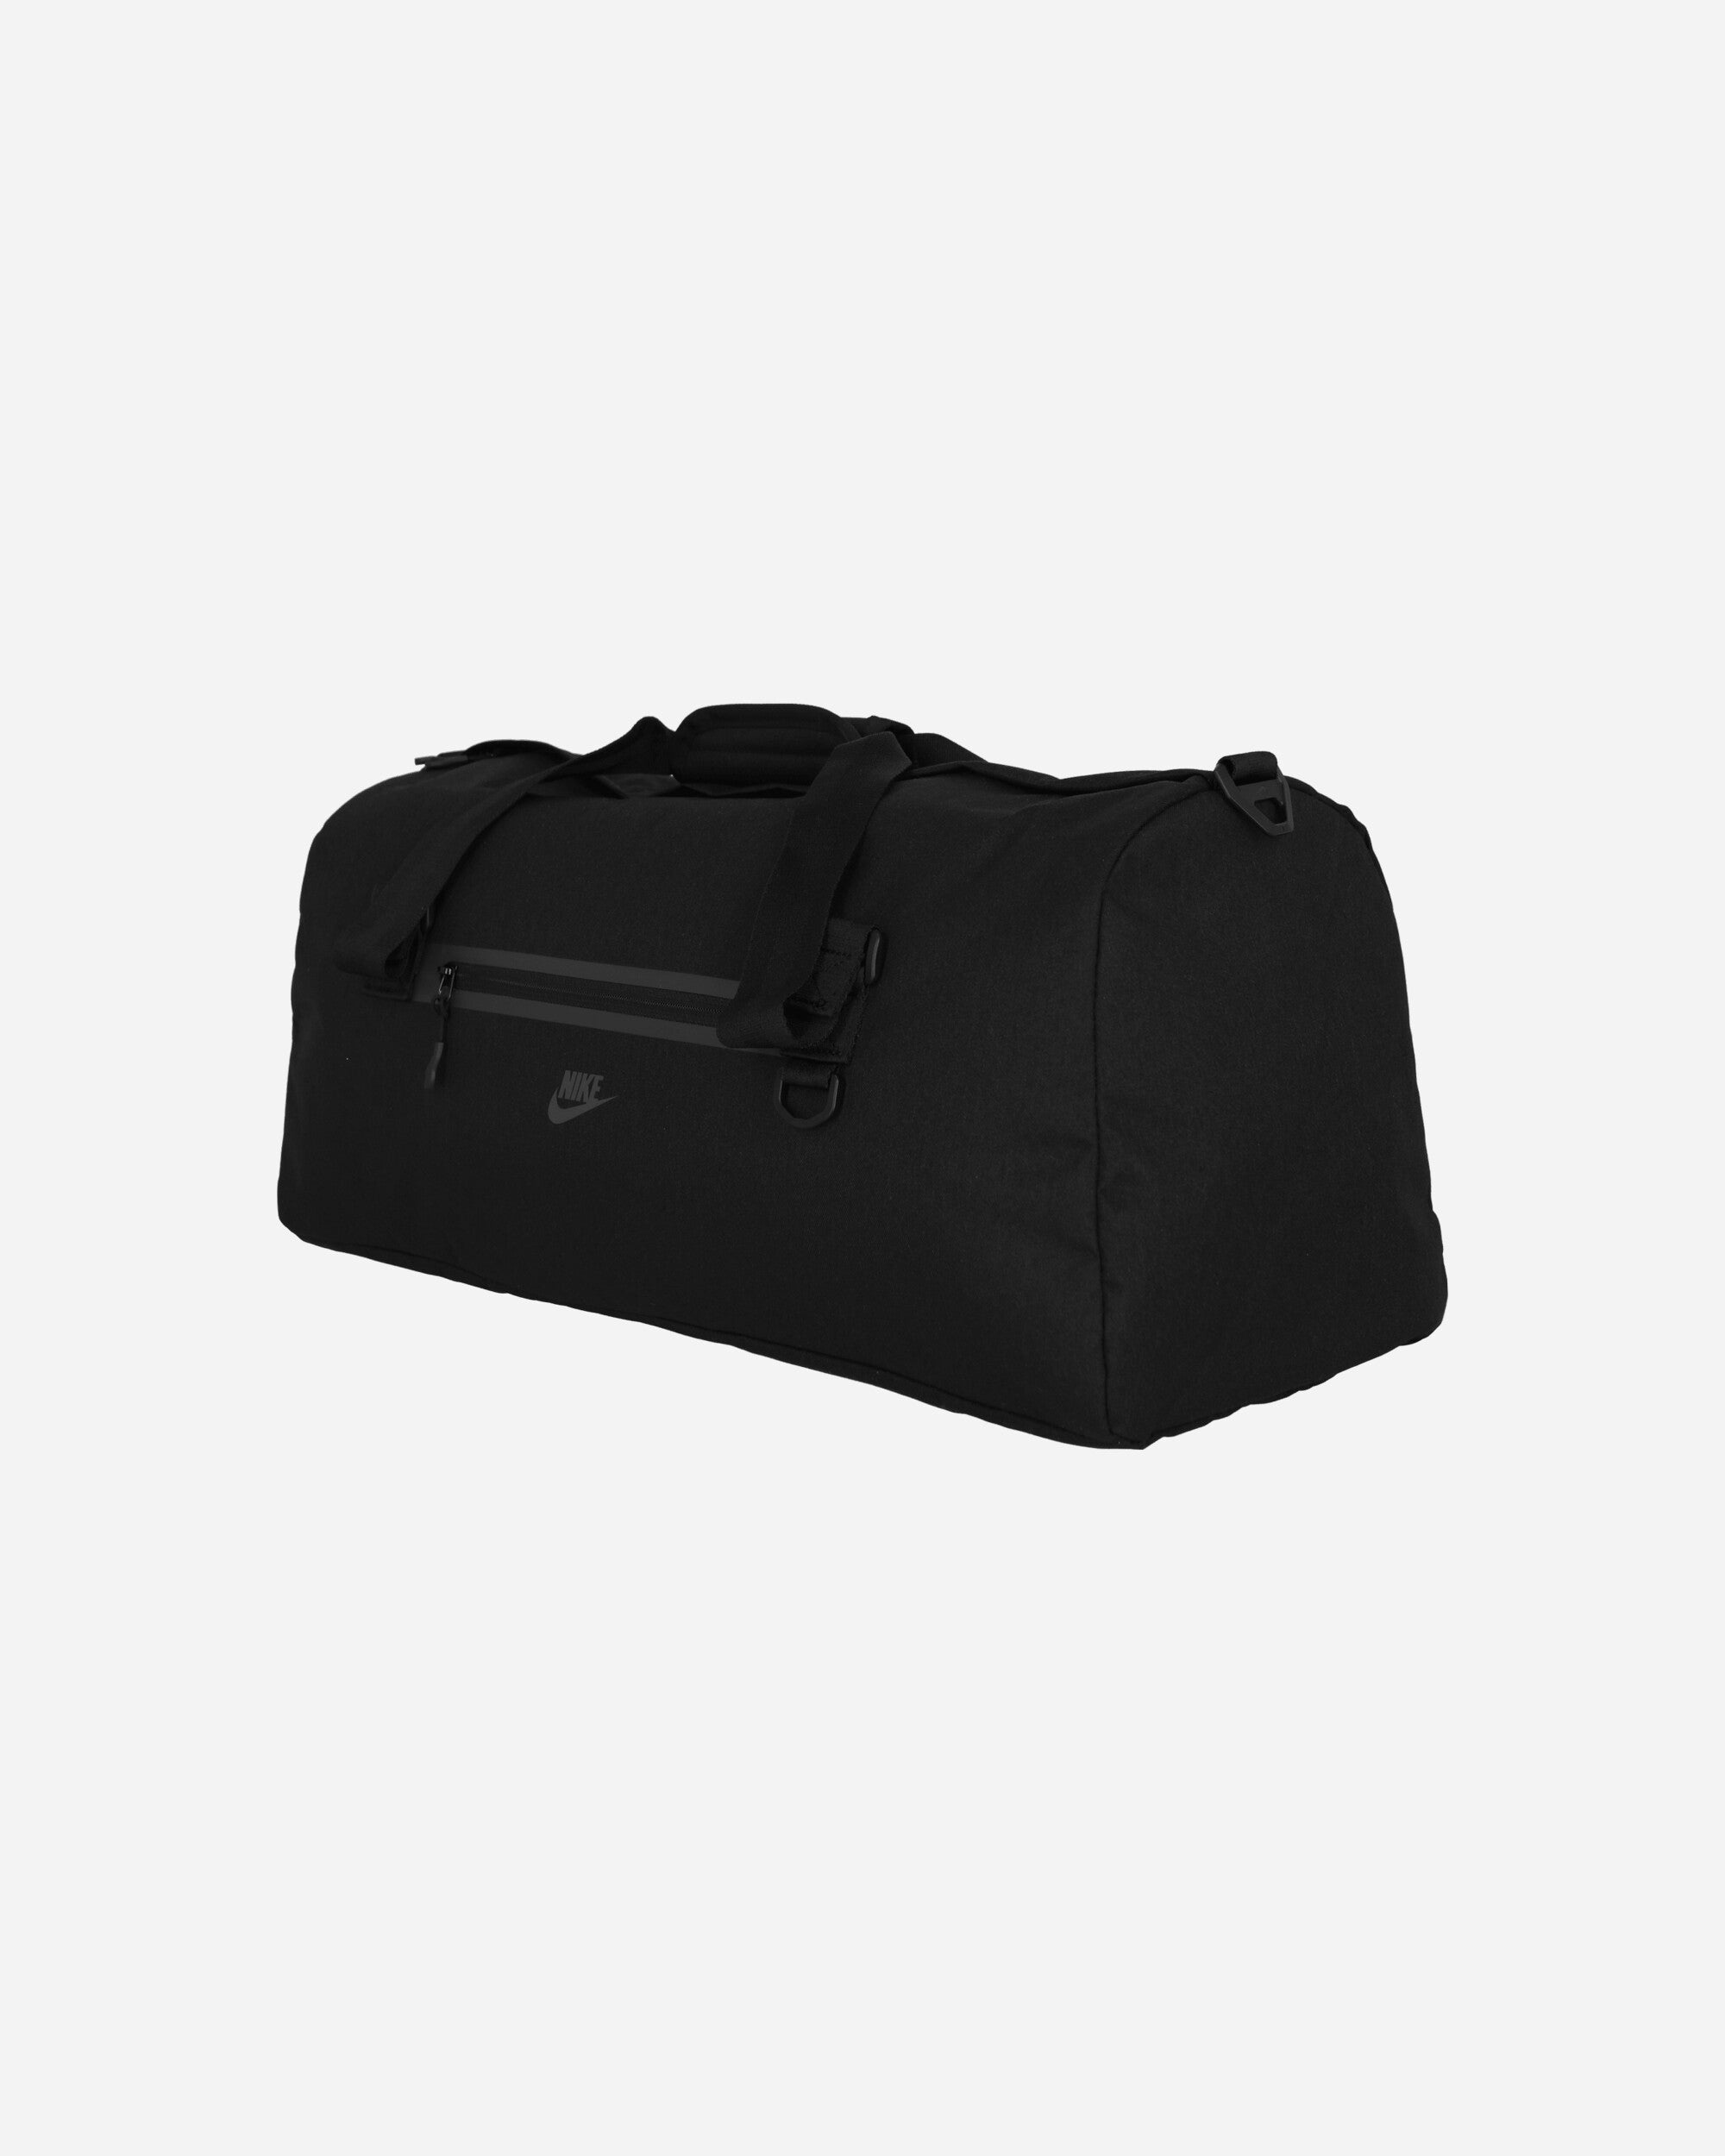 Premium Duffel Bag Black - 3